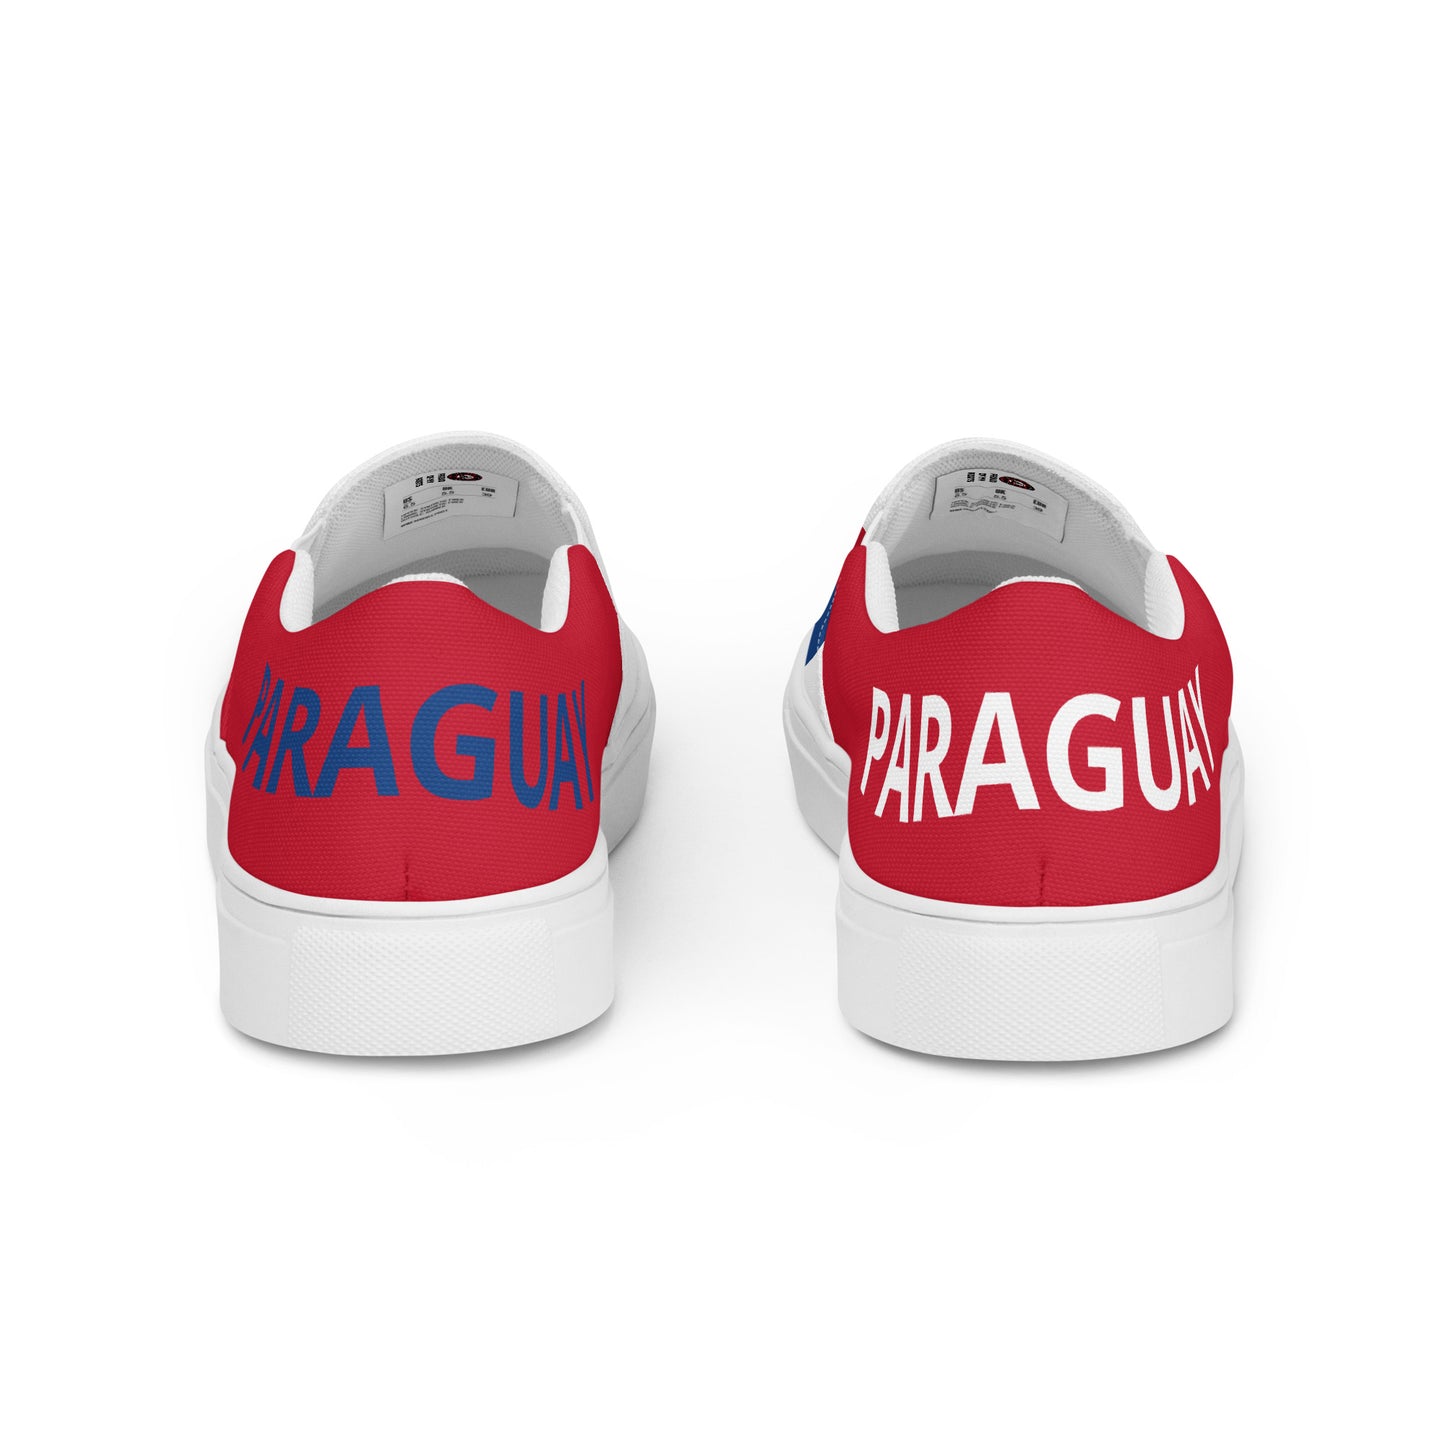 Paraguay - Mujer - Bandera - Zapatos Slip-on